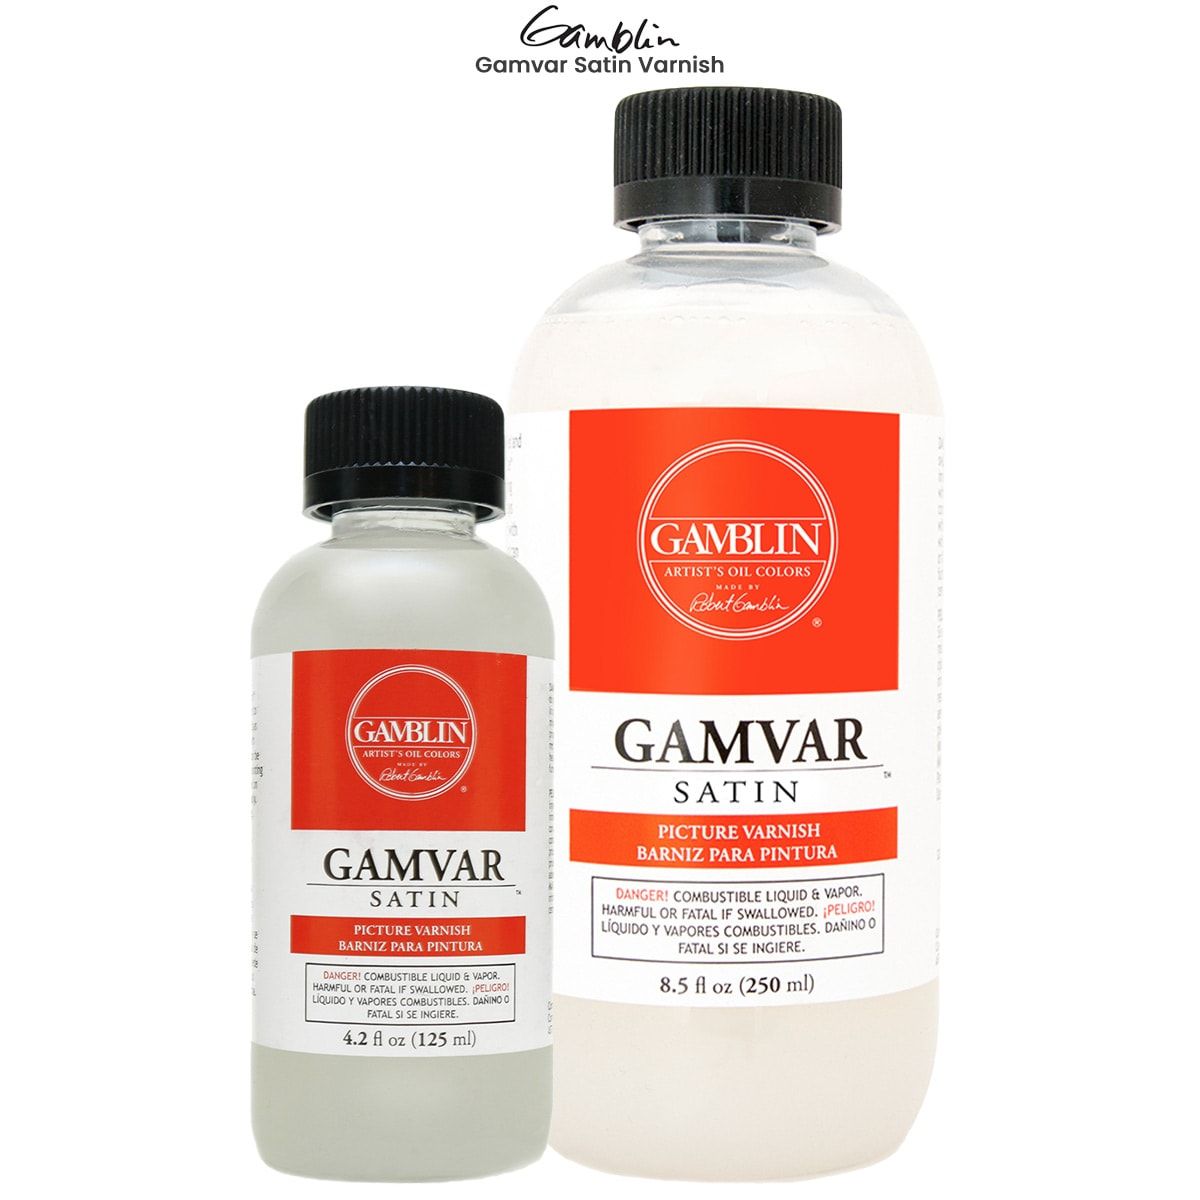 The Oil Paint Store on Instagram: Gamblin Gamvar Gloss Available